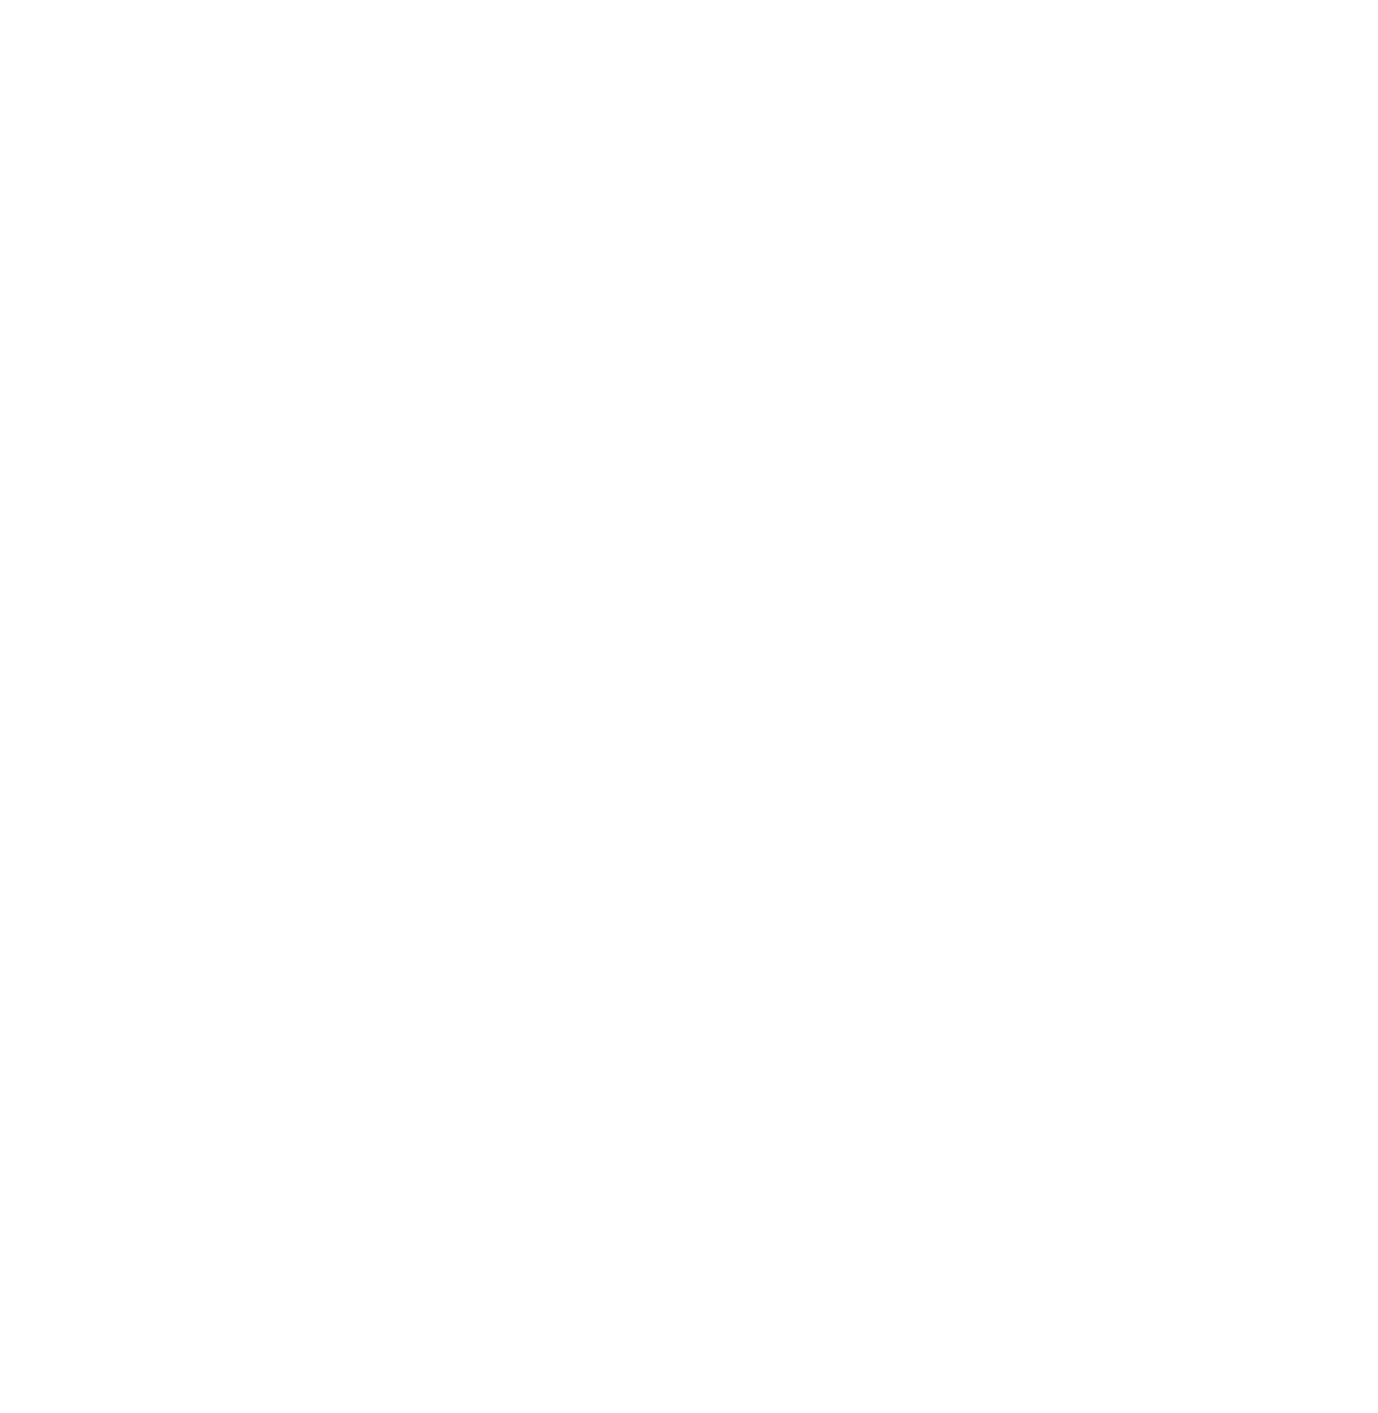 Gryphon Digital Mining logo for dark backgrounds (transparent PNG)